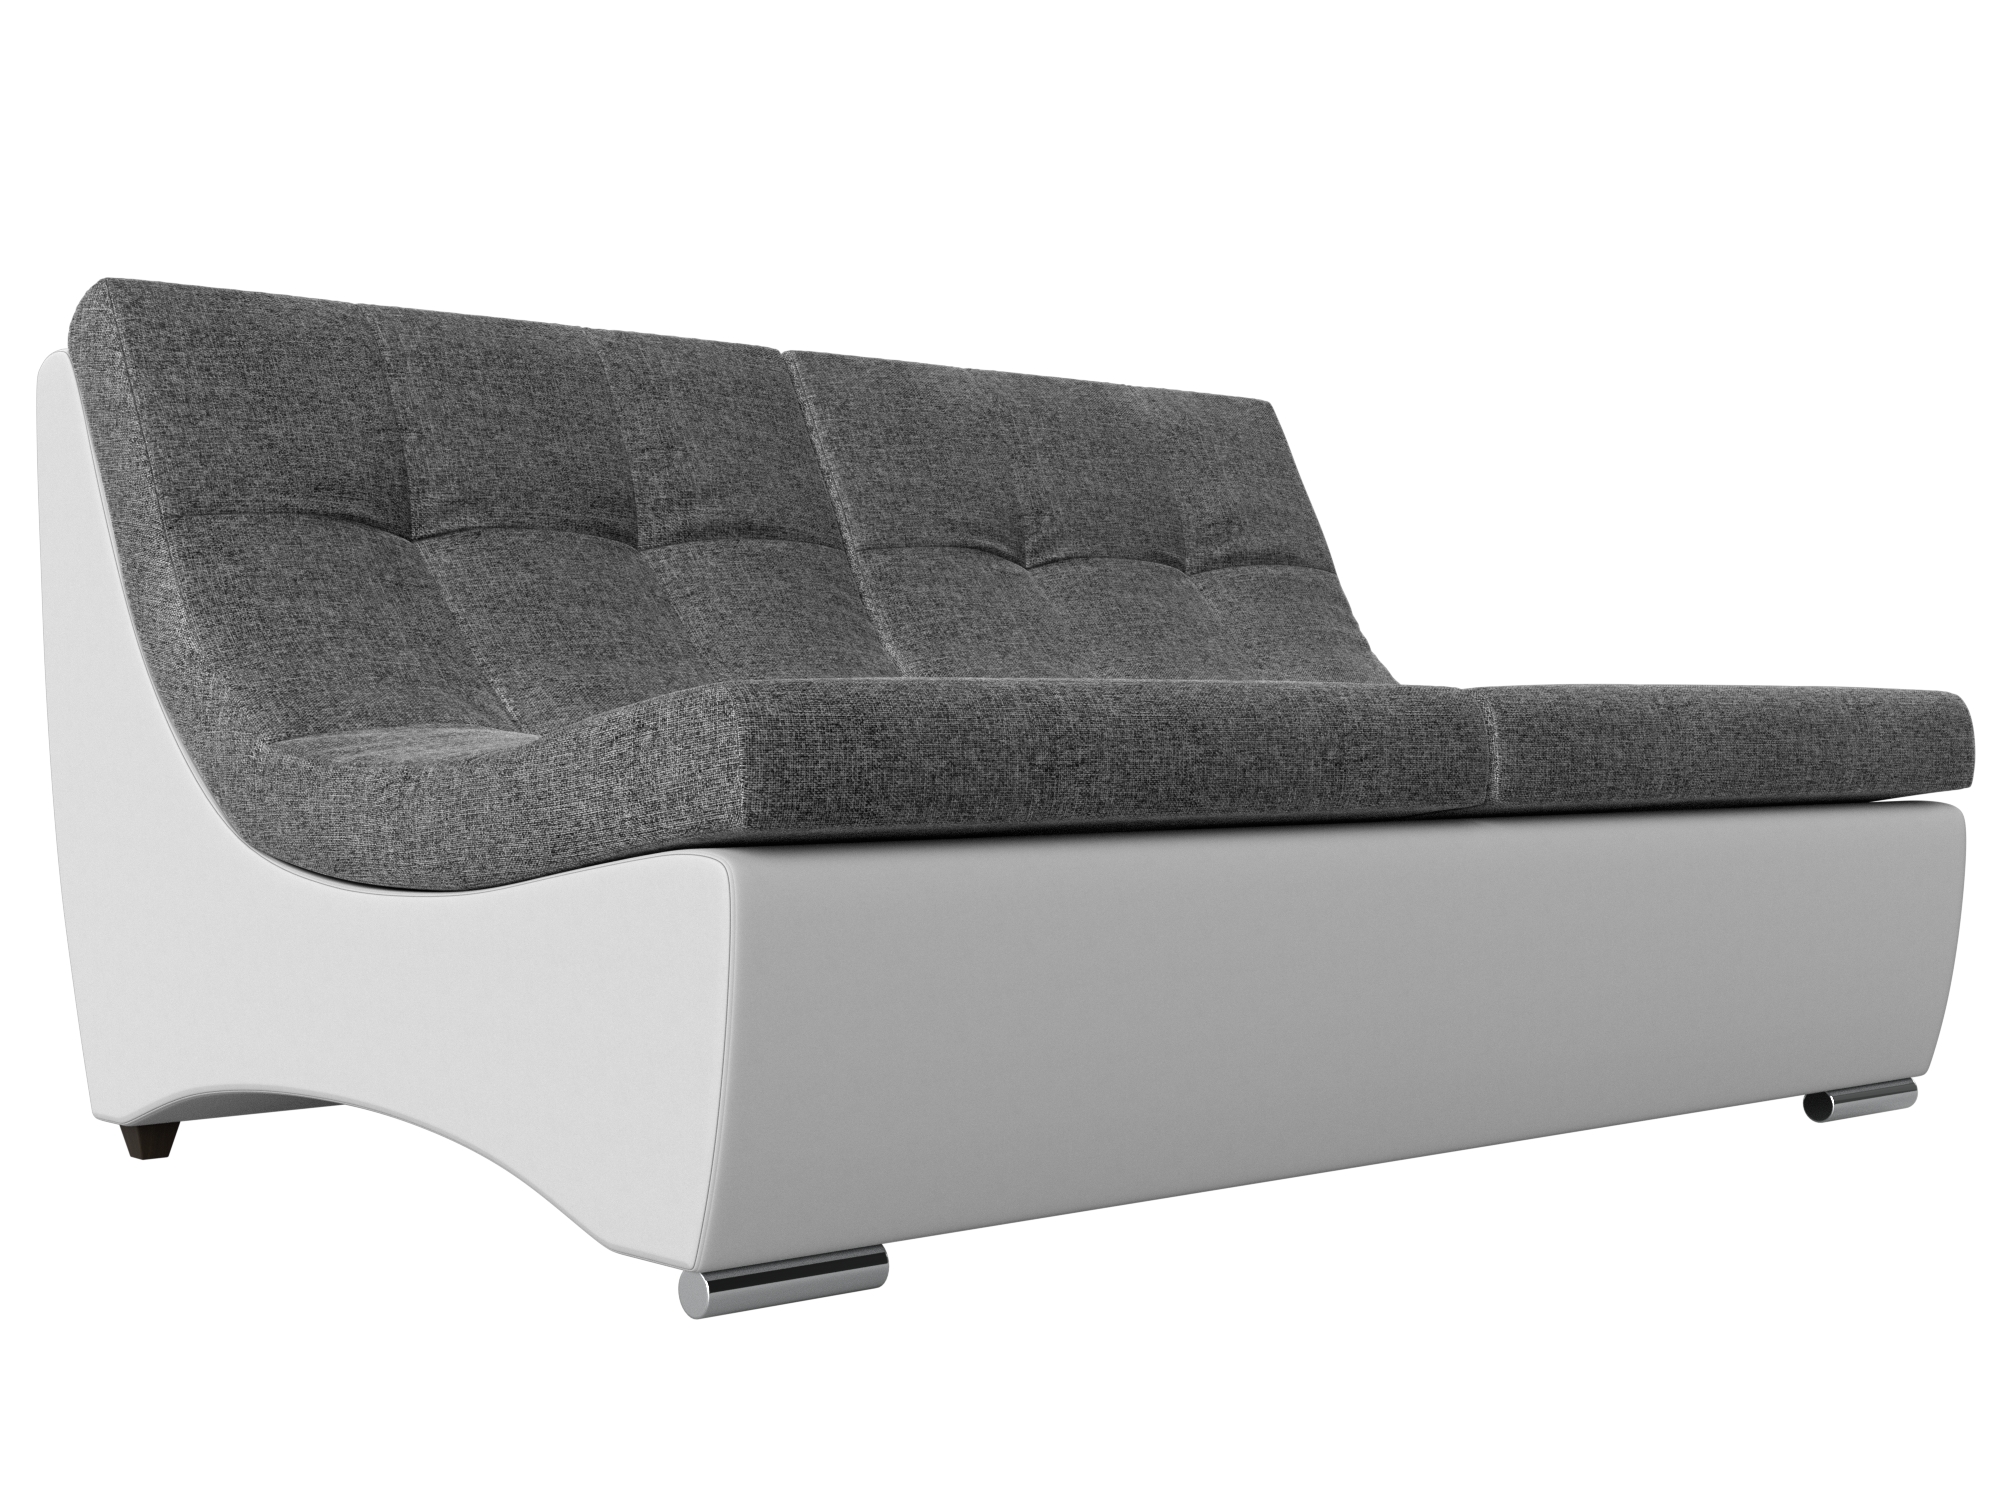 

Модуль Монреаль диван рогожка/экокожа серый/белый, Модуль Монреаль диван